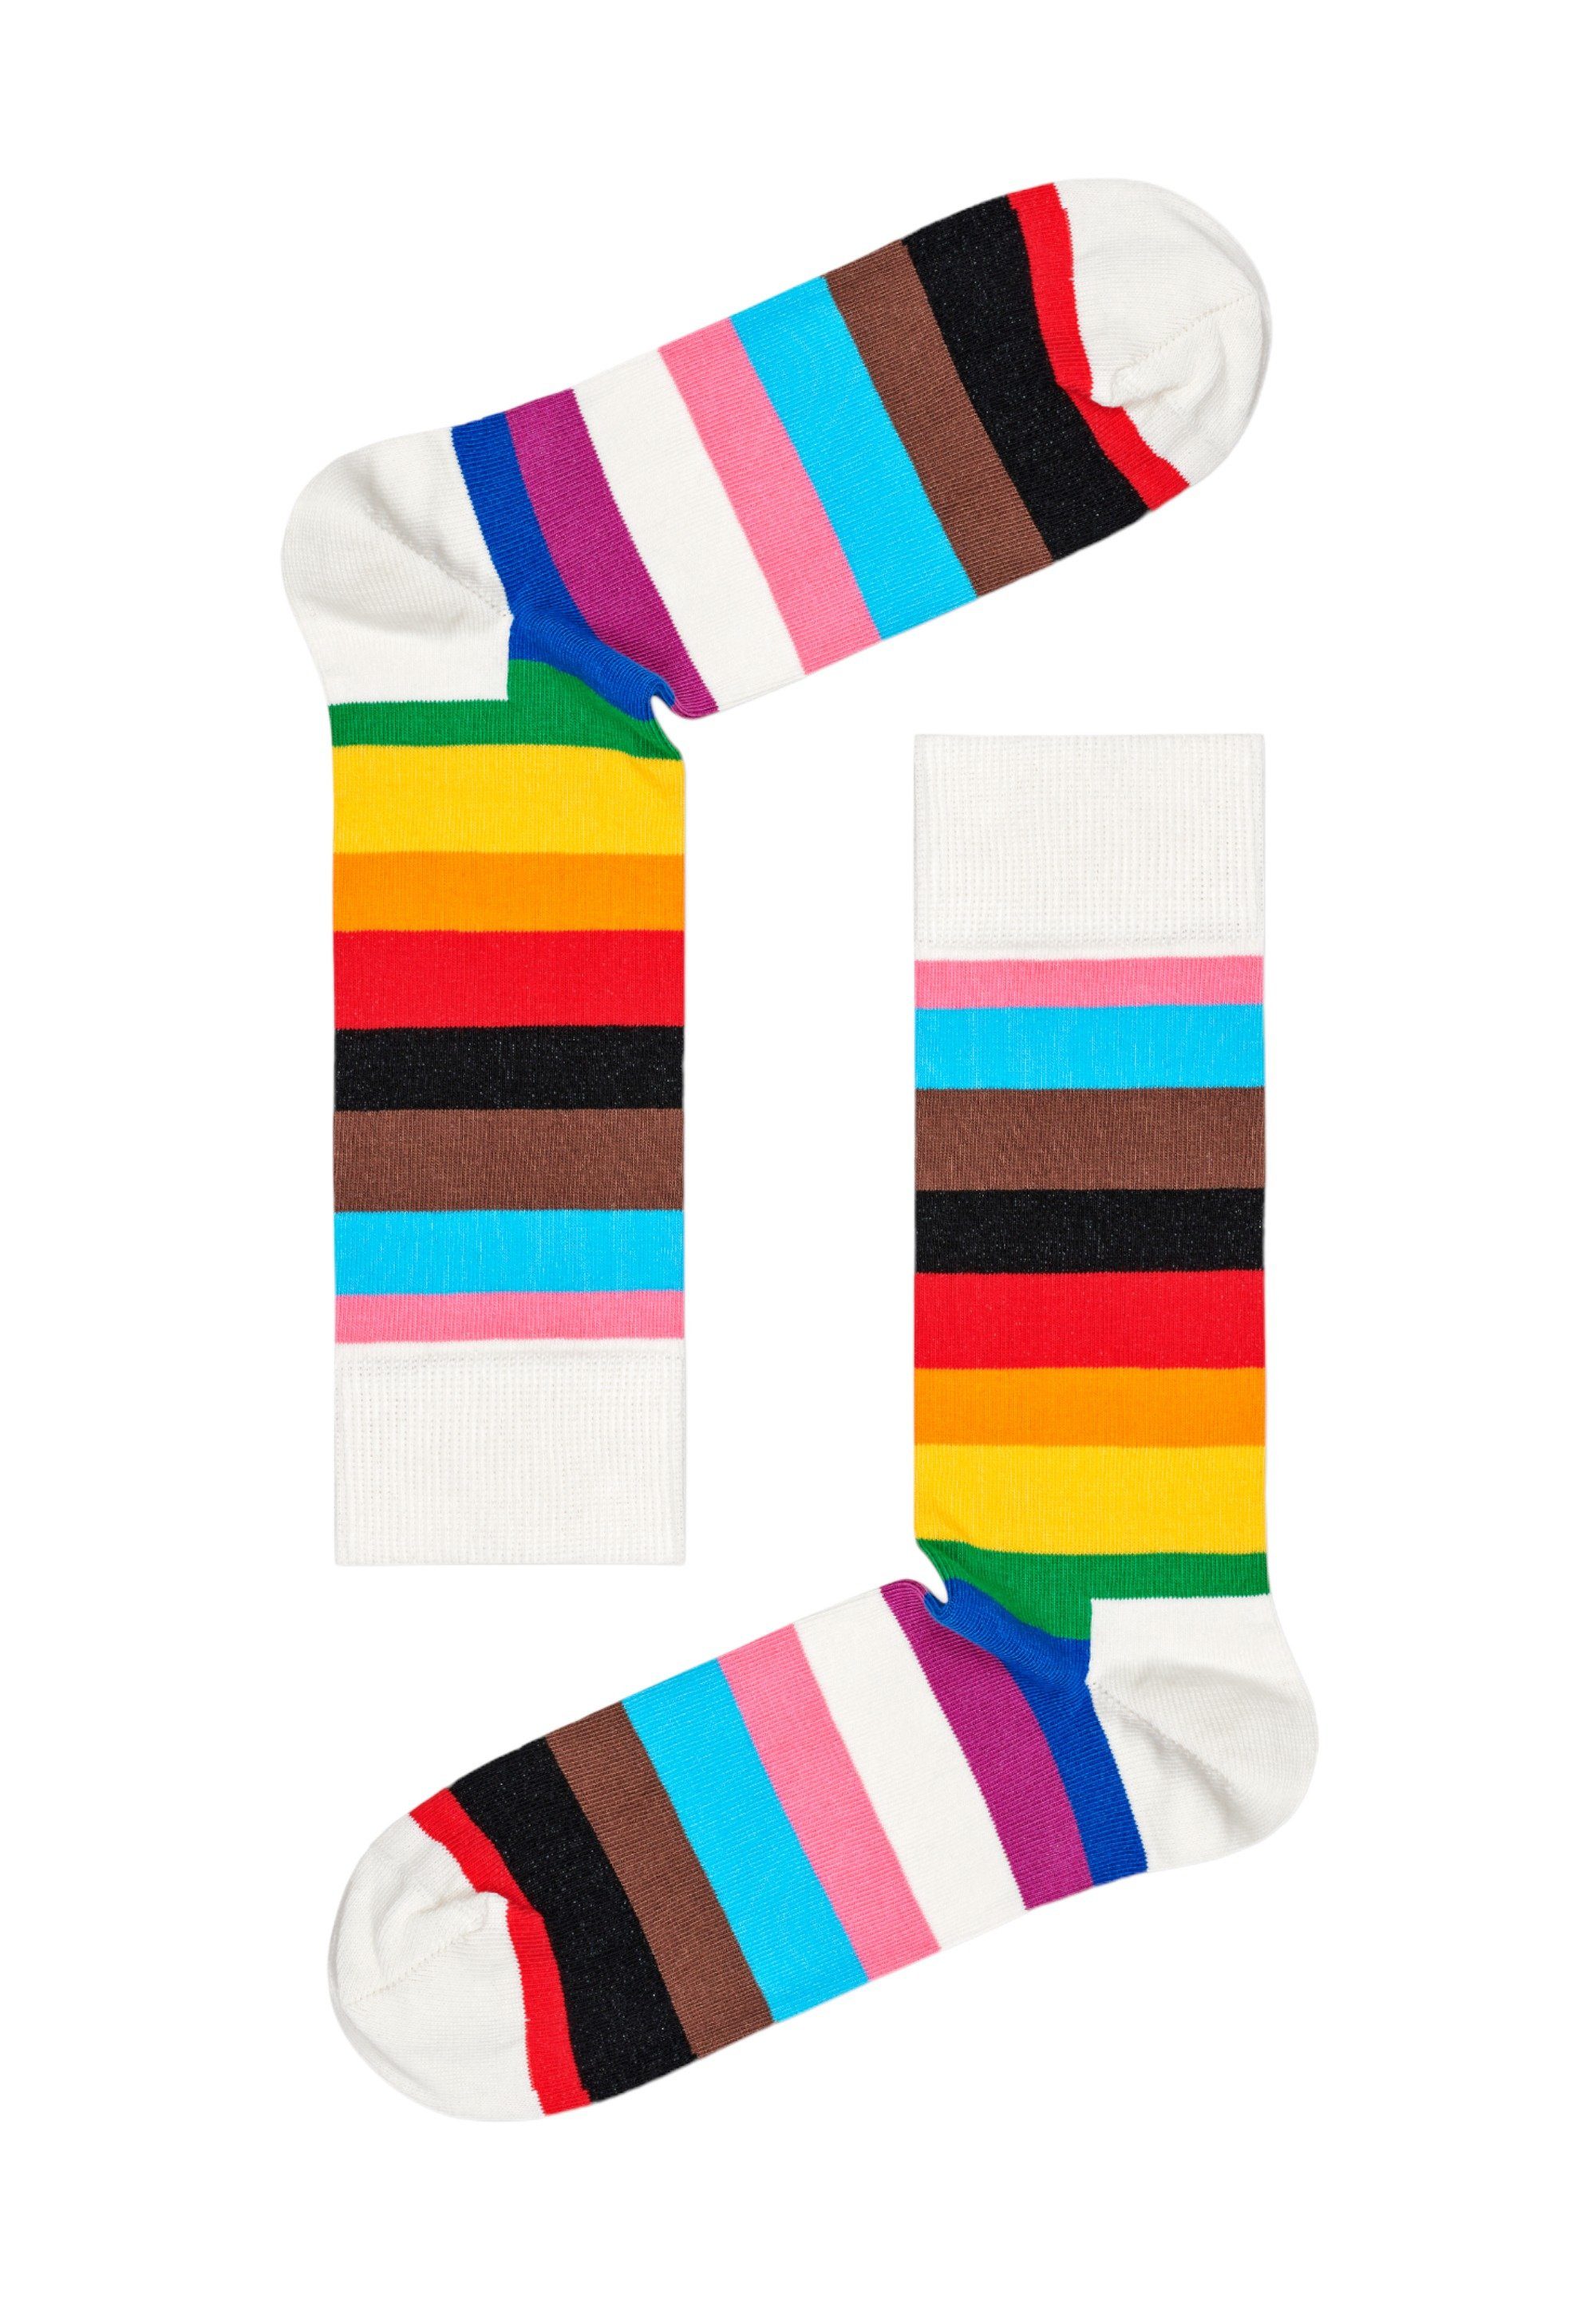 2 Gift Pride Socks Socks Set Basicsocken Baumwolle Pride gekämmte 3-Pack Happy